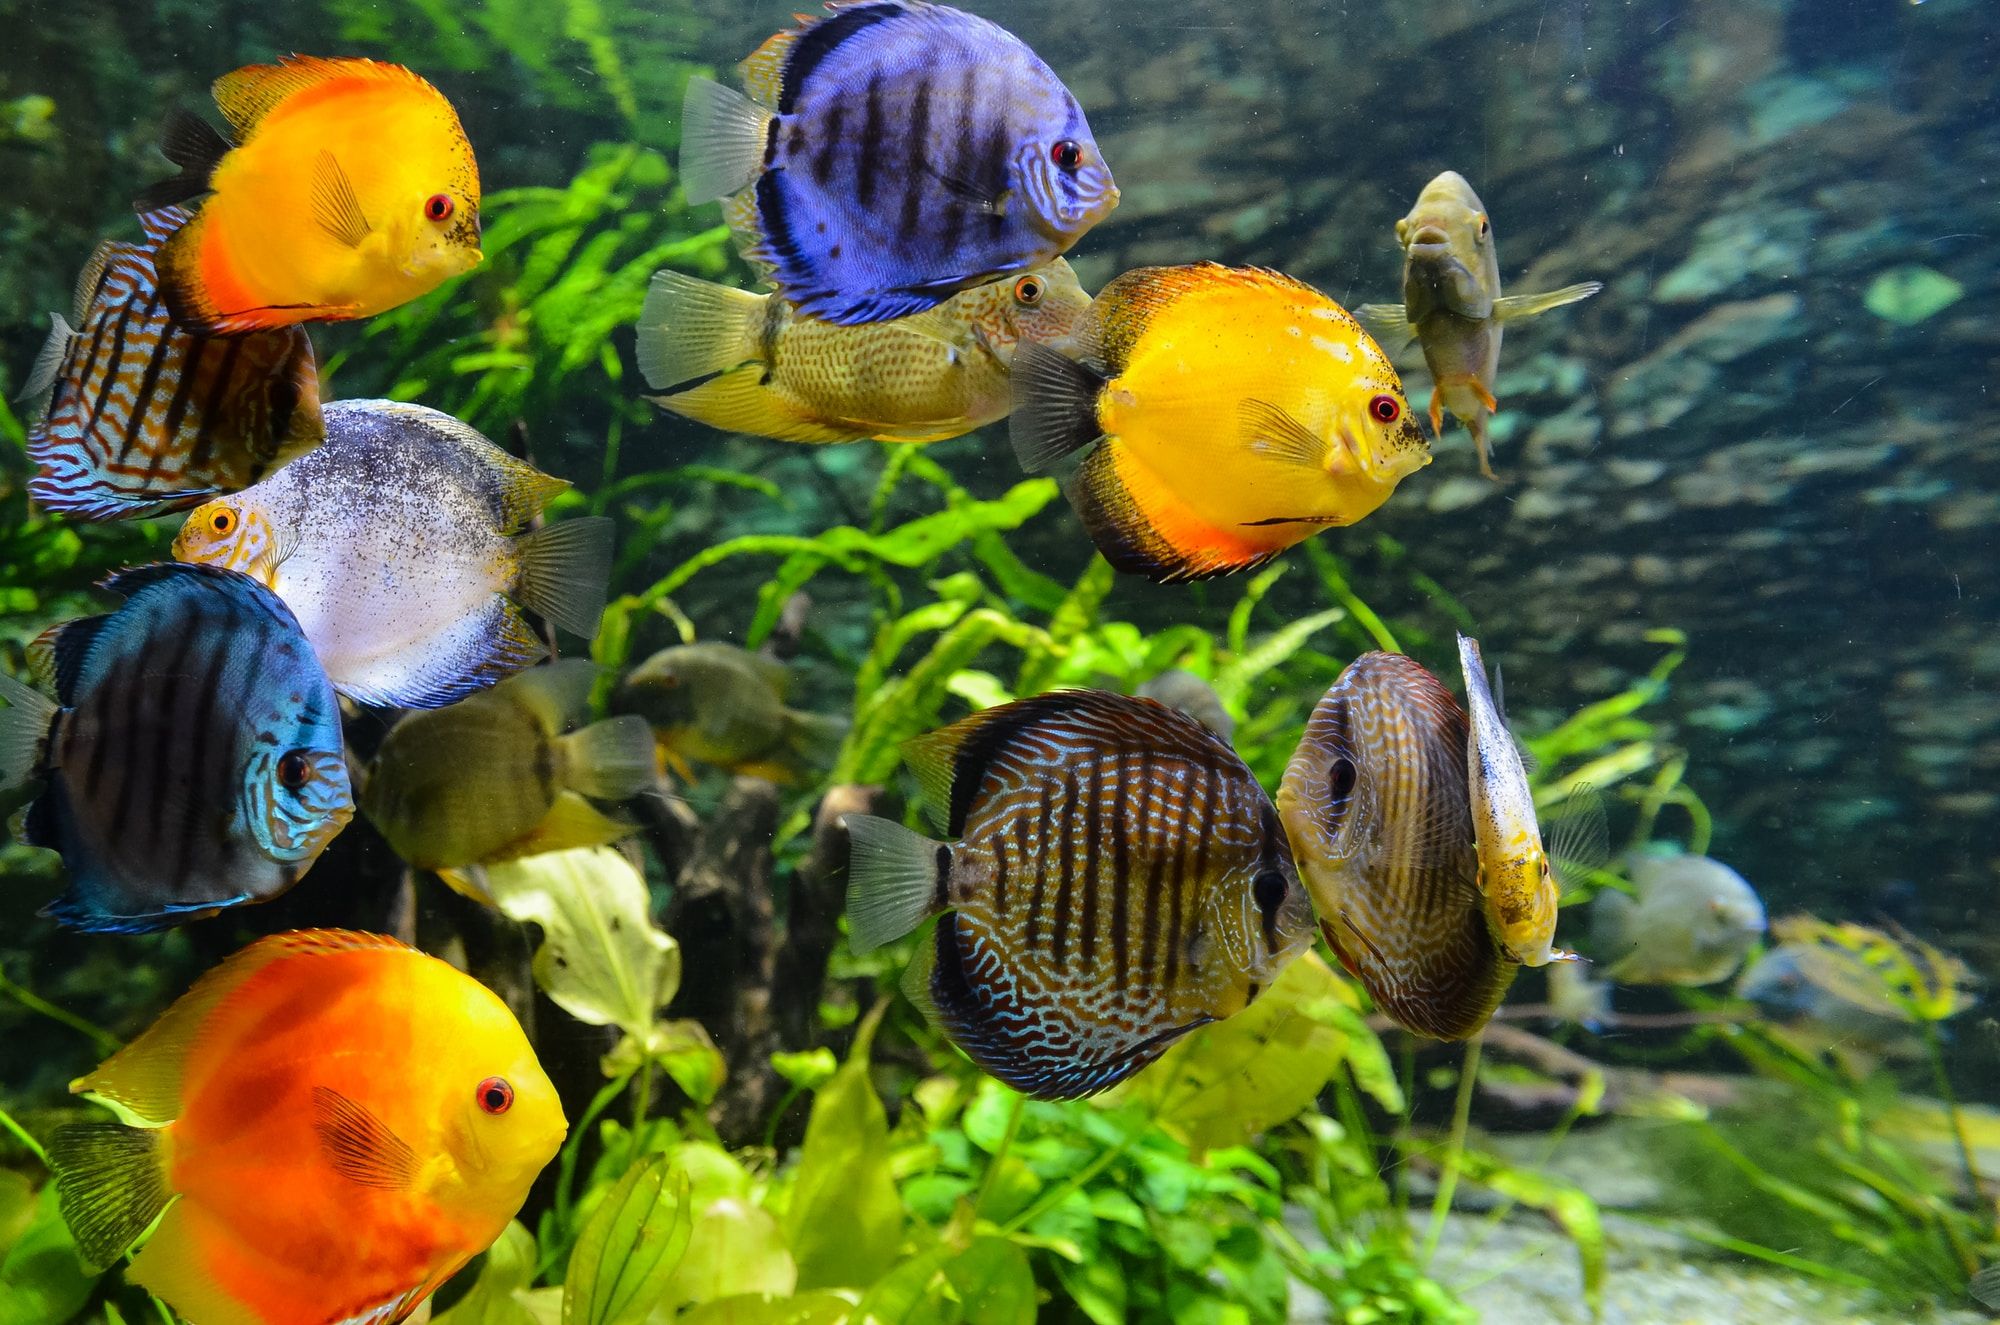 Skegness Aquarium